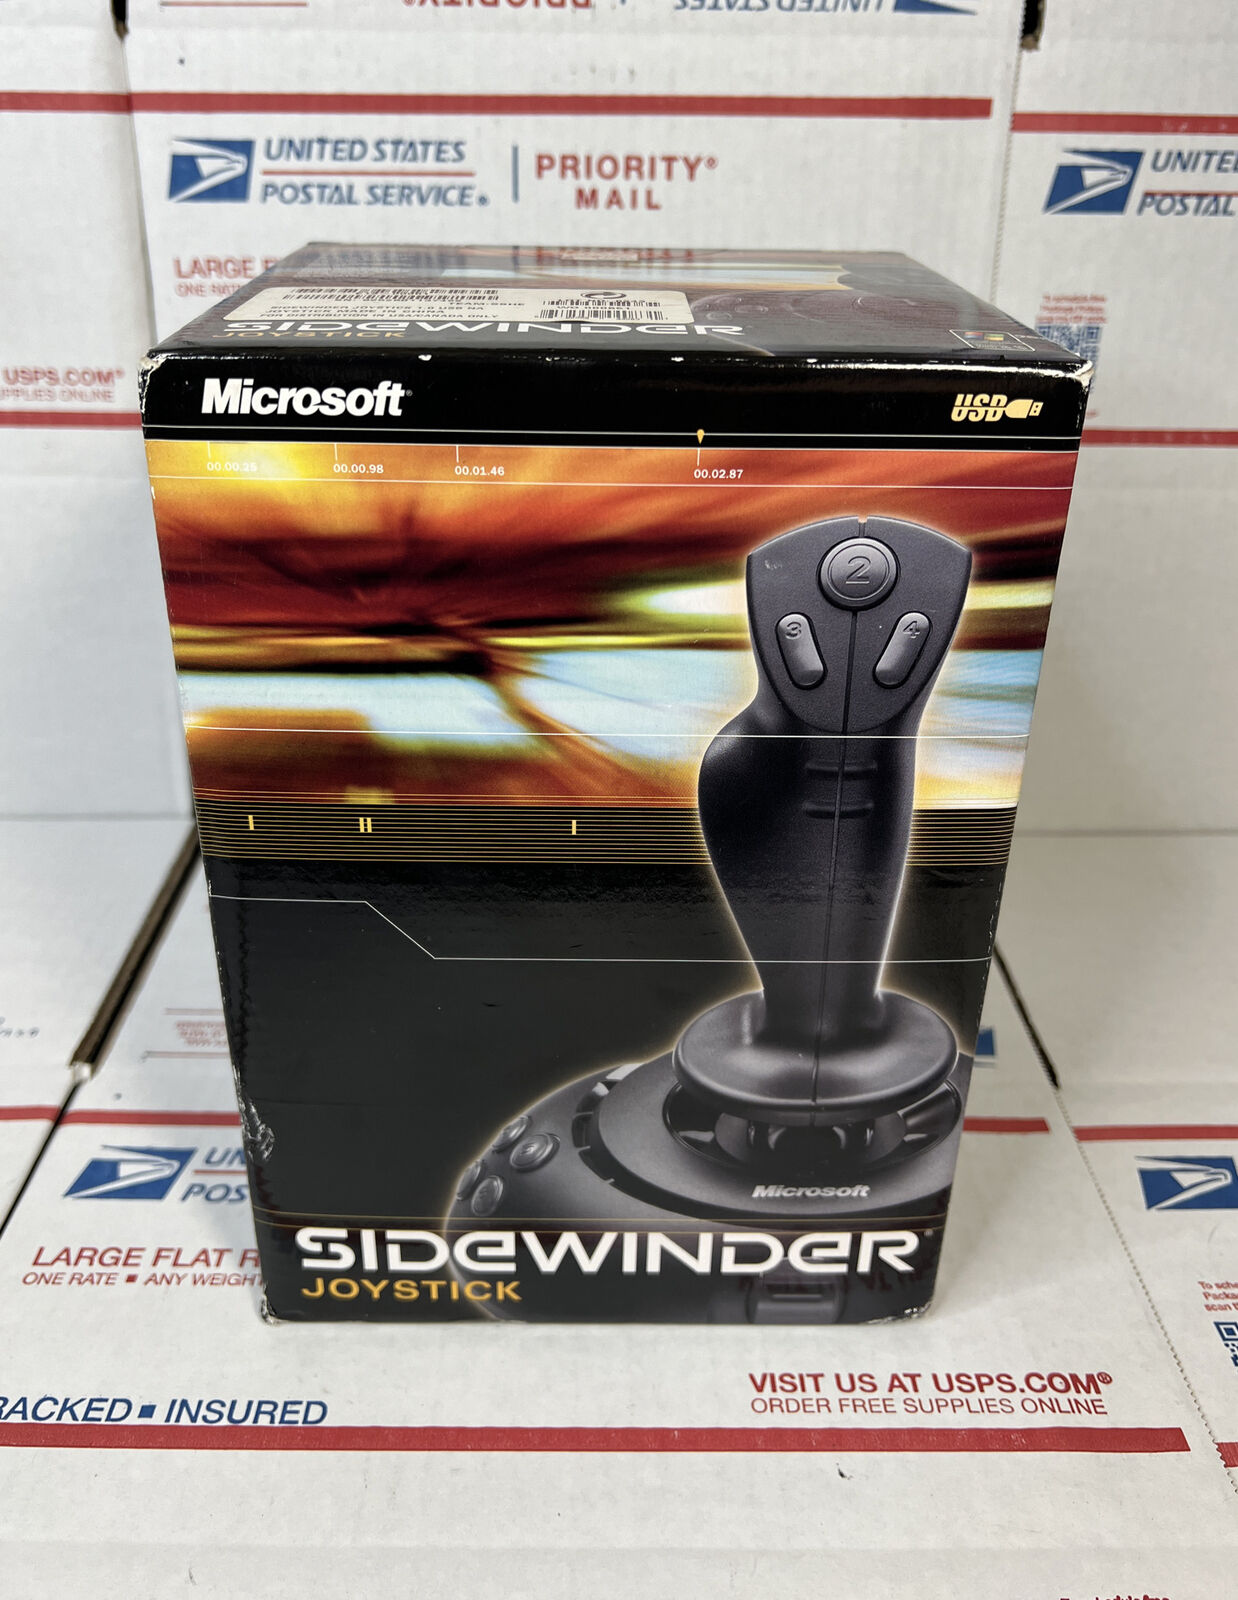 NEW / SEALED - Microsoft Sidewinder 1.0 USB PC Wired Joystick - NEXT DAY SHIP